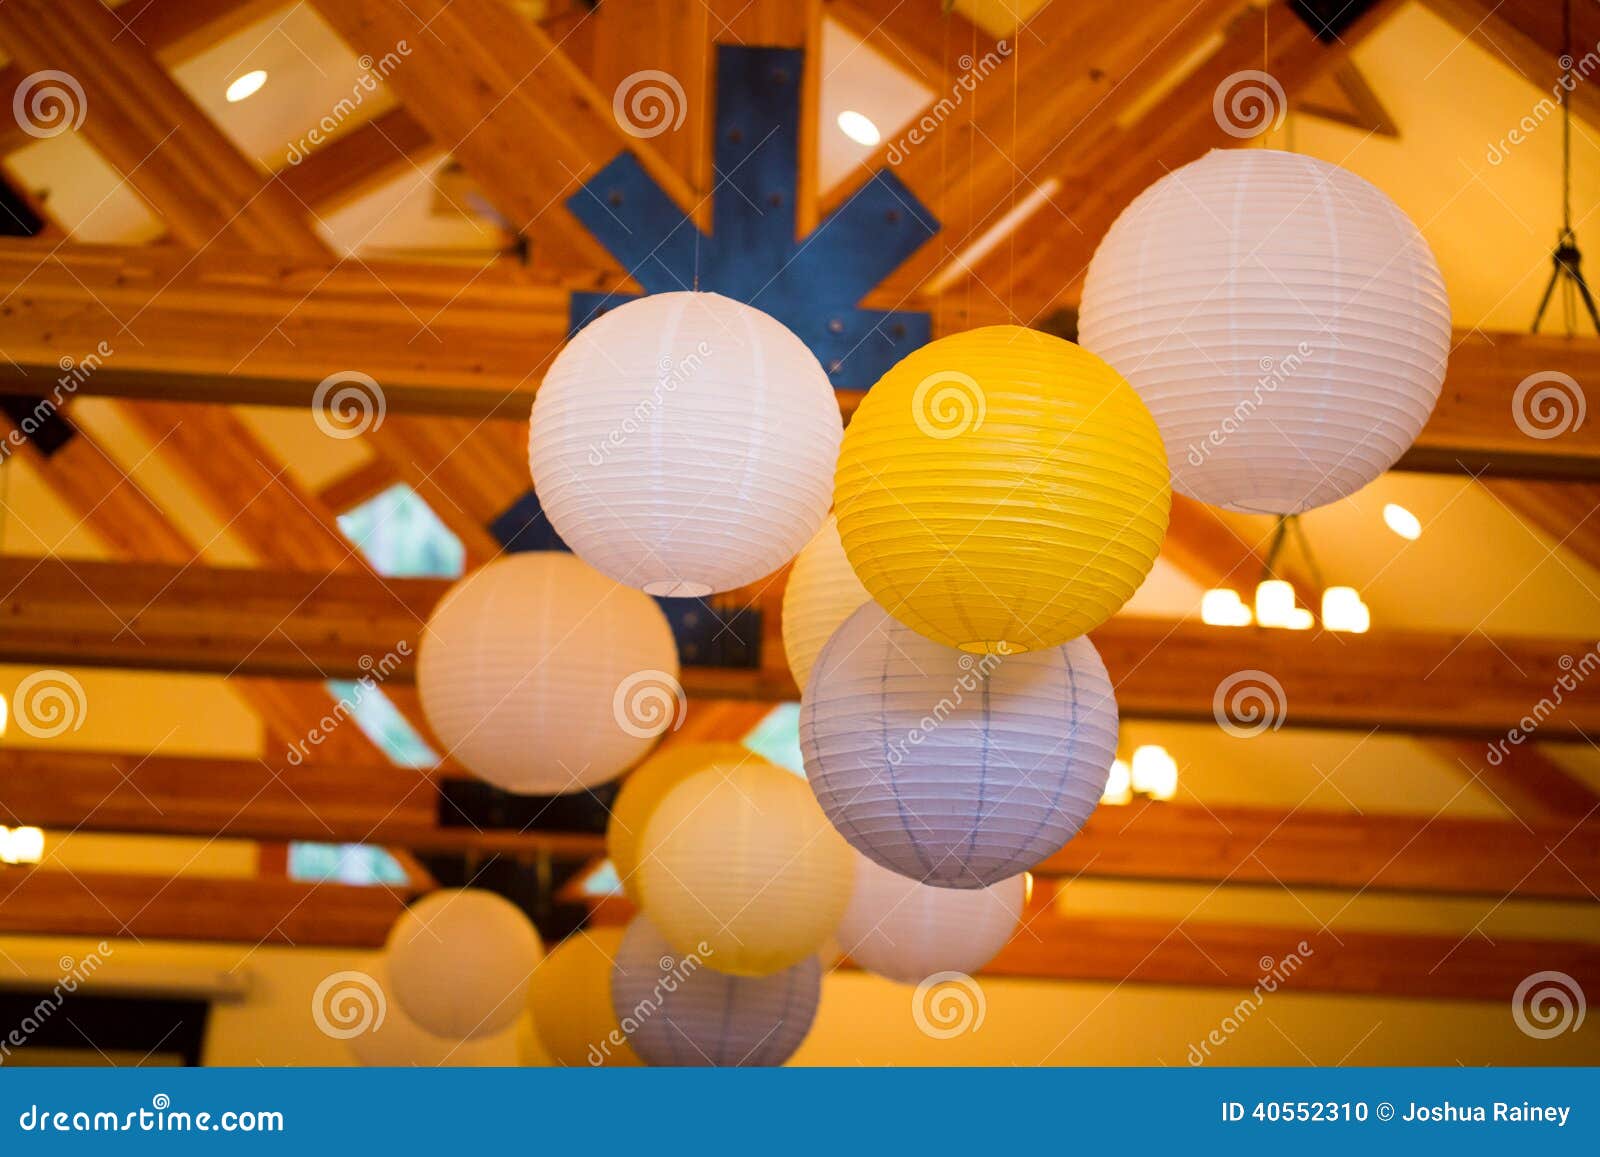 Lanterne Di Carta Bianche E Gialle a Nozze Fotografia Stock - Immagine di  decorazione, caduta: 40552310